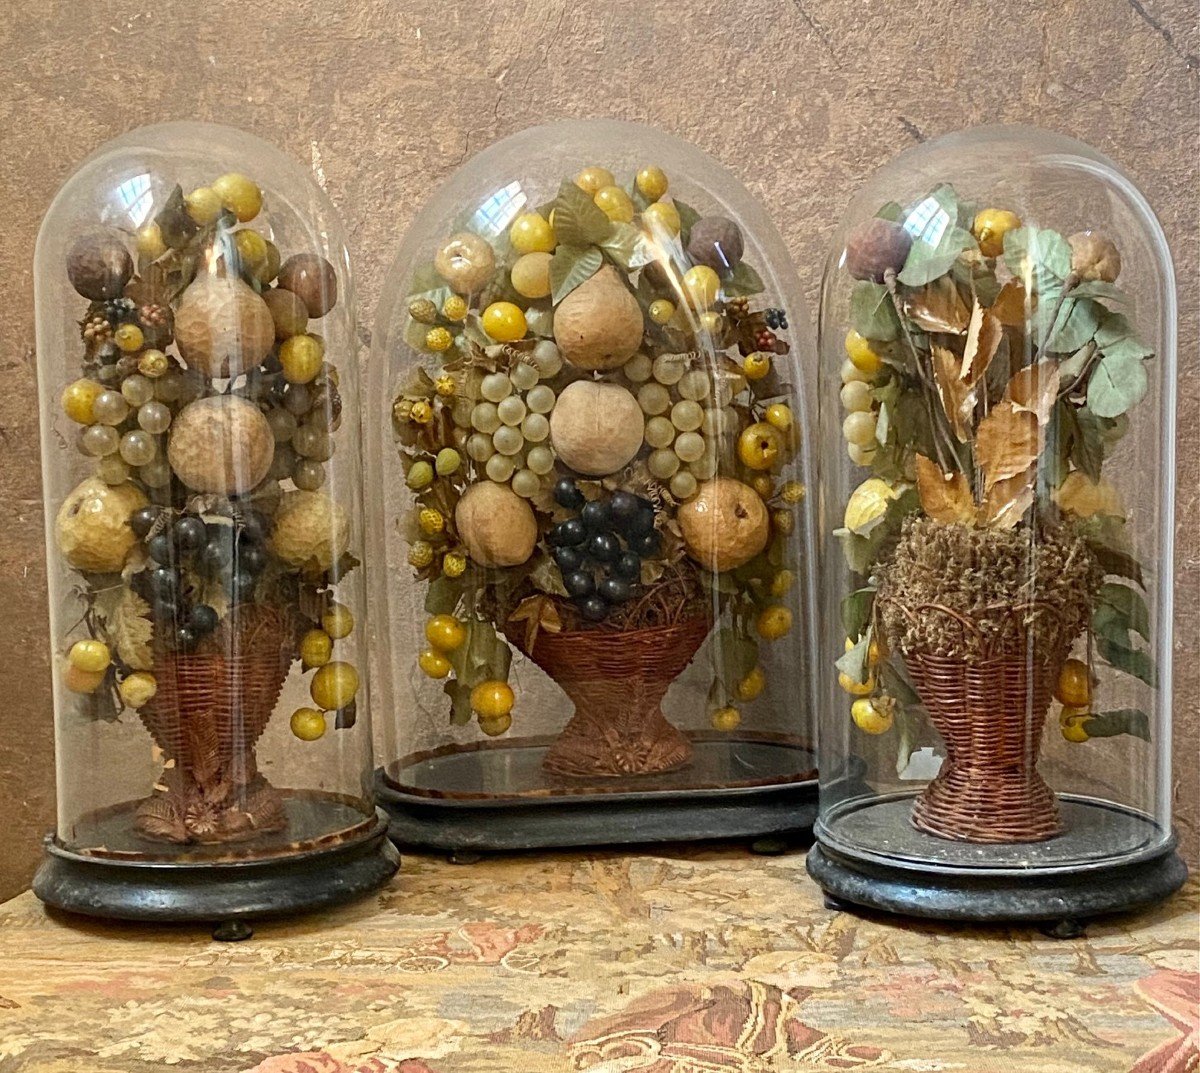 Triomphes de fruits en papier mâché et verre sous cloches de verre - Italie, fin des années 1800